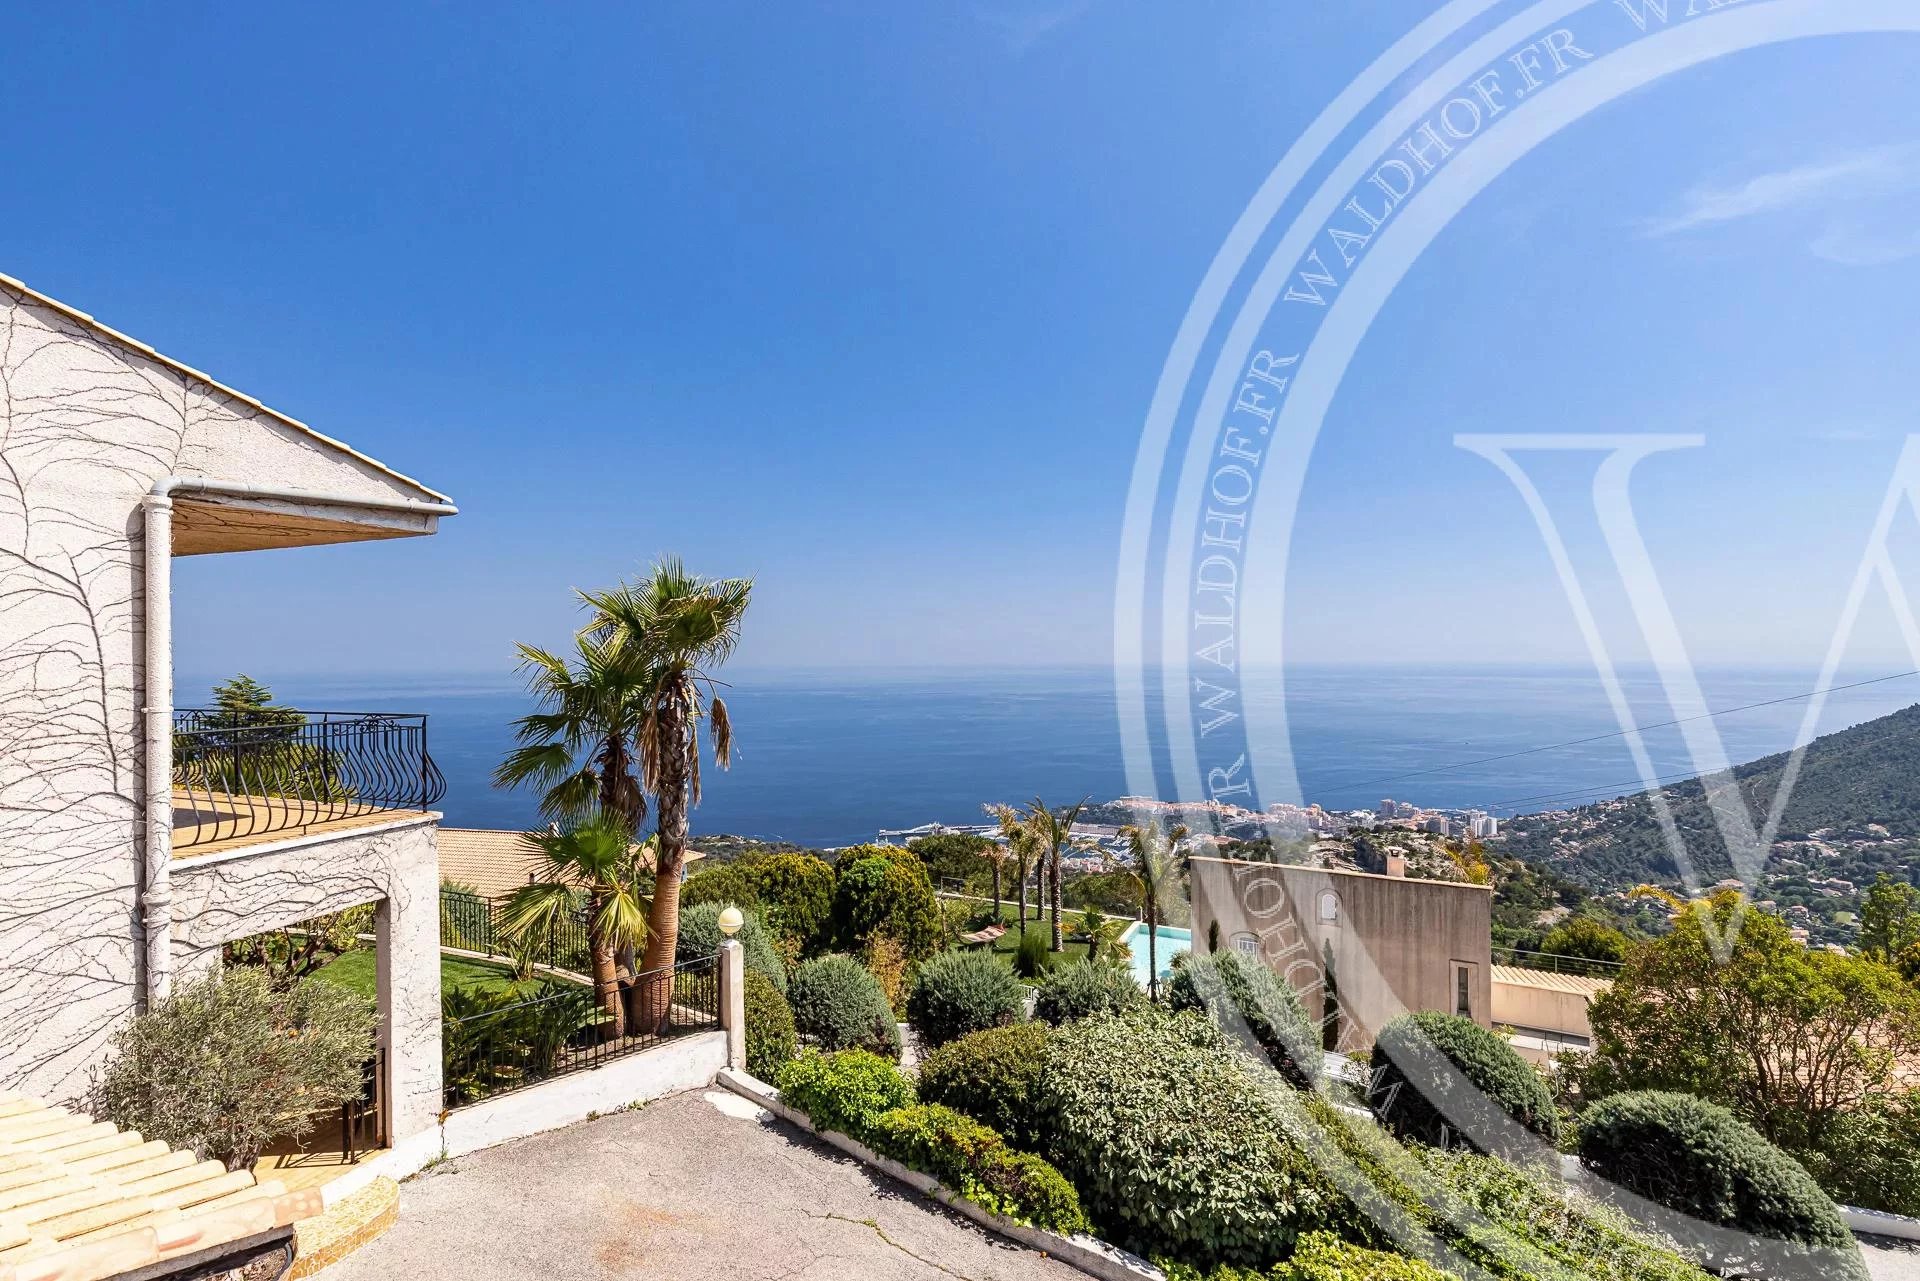 Propriété dans un domaine privé avec vue panoramique sur la mer et Monaco à couper le souffle.